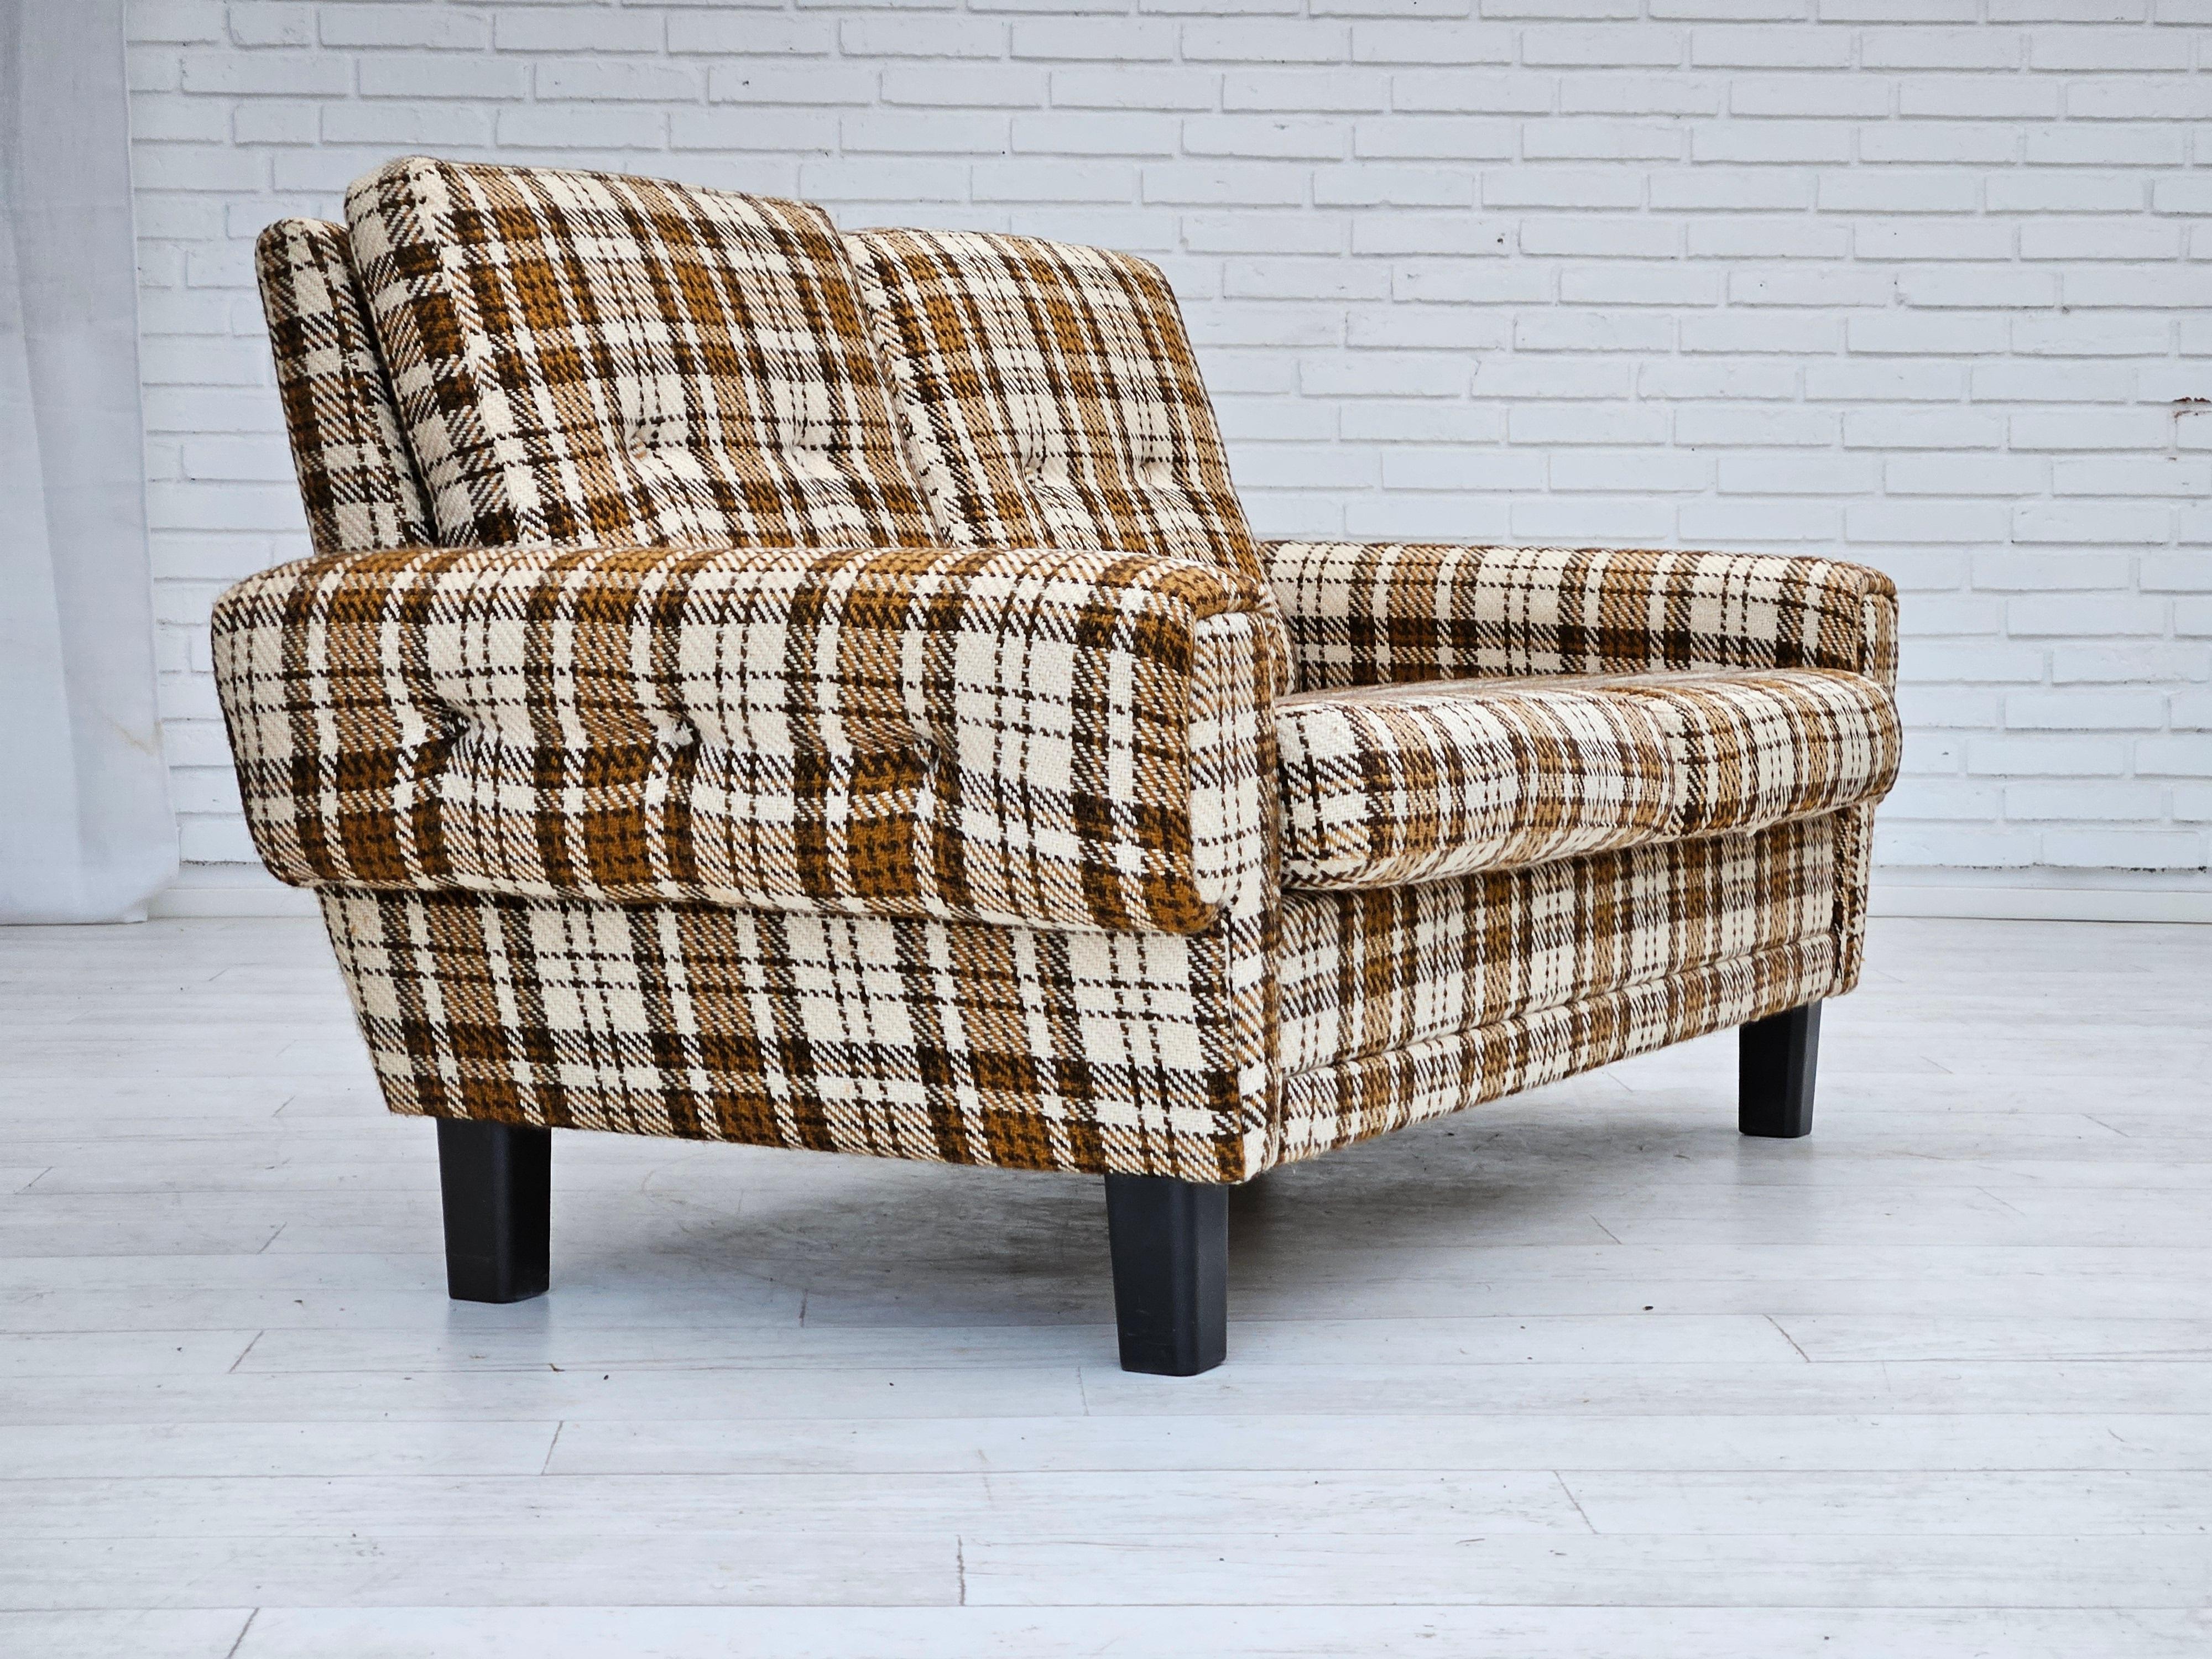 Dänisches 2-Sitzer-Sofa aus den 1970er Jahren in sehr gutem Originalzustand: keine Gerüche und keine Flecken. Möbel aus Wollstoff, abnehmbare Kissen, braune Kunststoffbeine. Hergestellt von einem dänischen Möbelhersteller in den Jahren 1970-75.